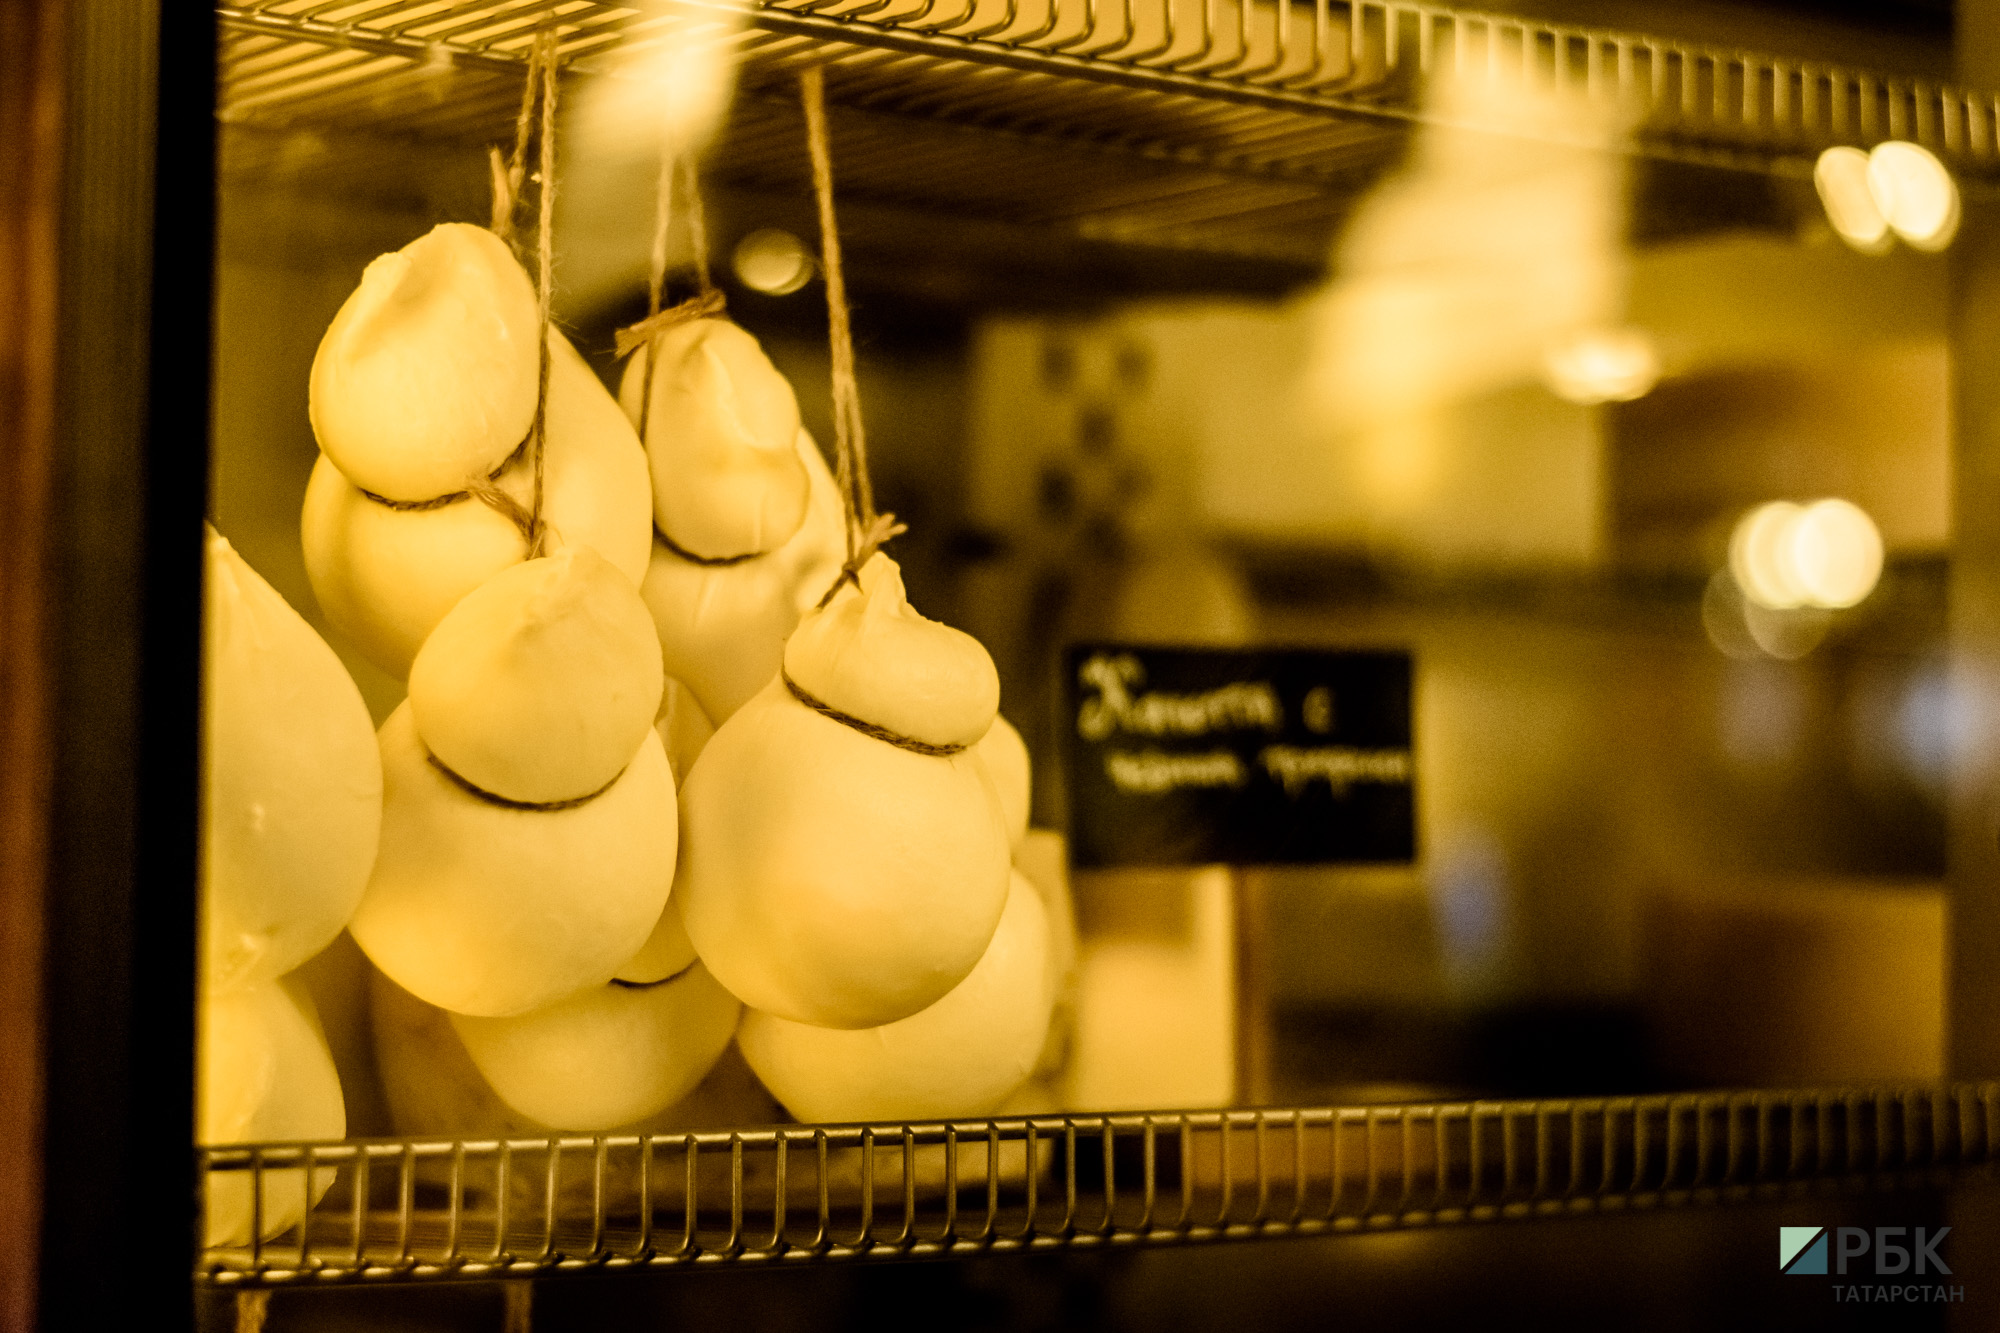 Шеф-повар ресторана Булат Камаев рассказал, что в
Cheeseria производят порядка 12 видов сыра.&nbsp;